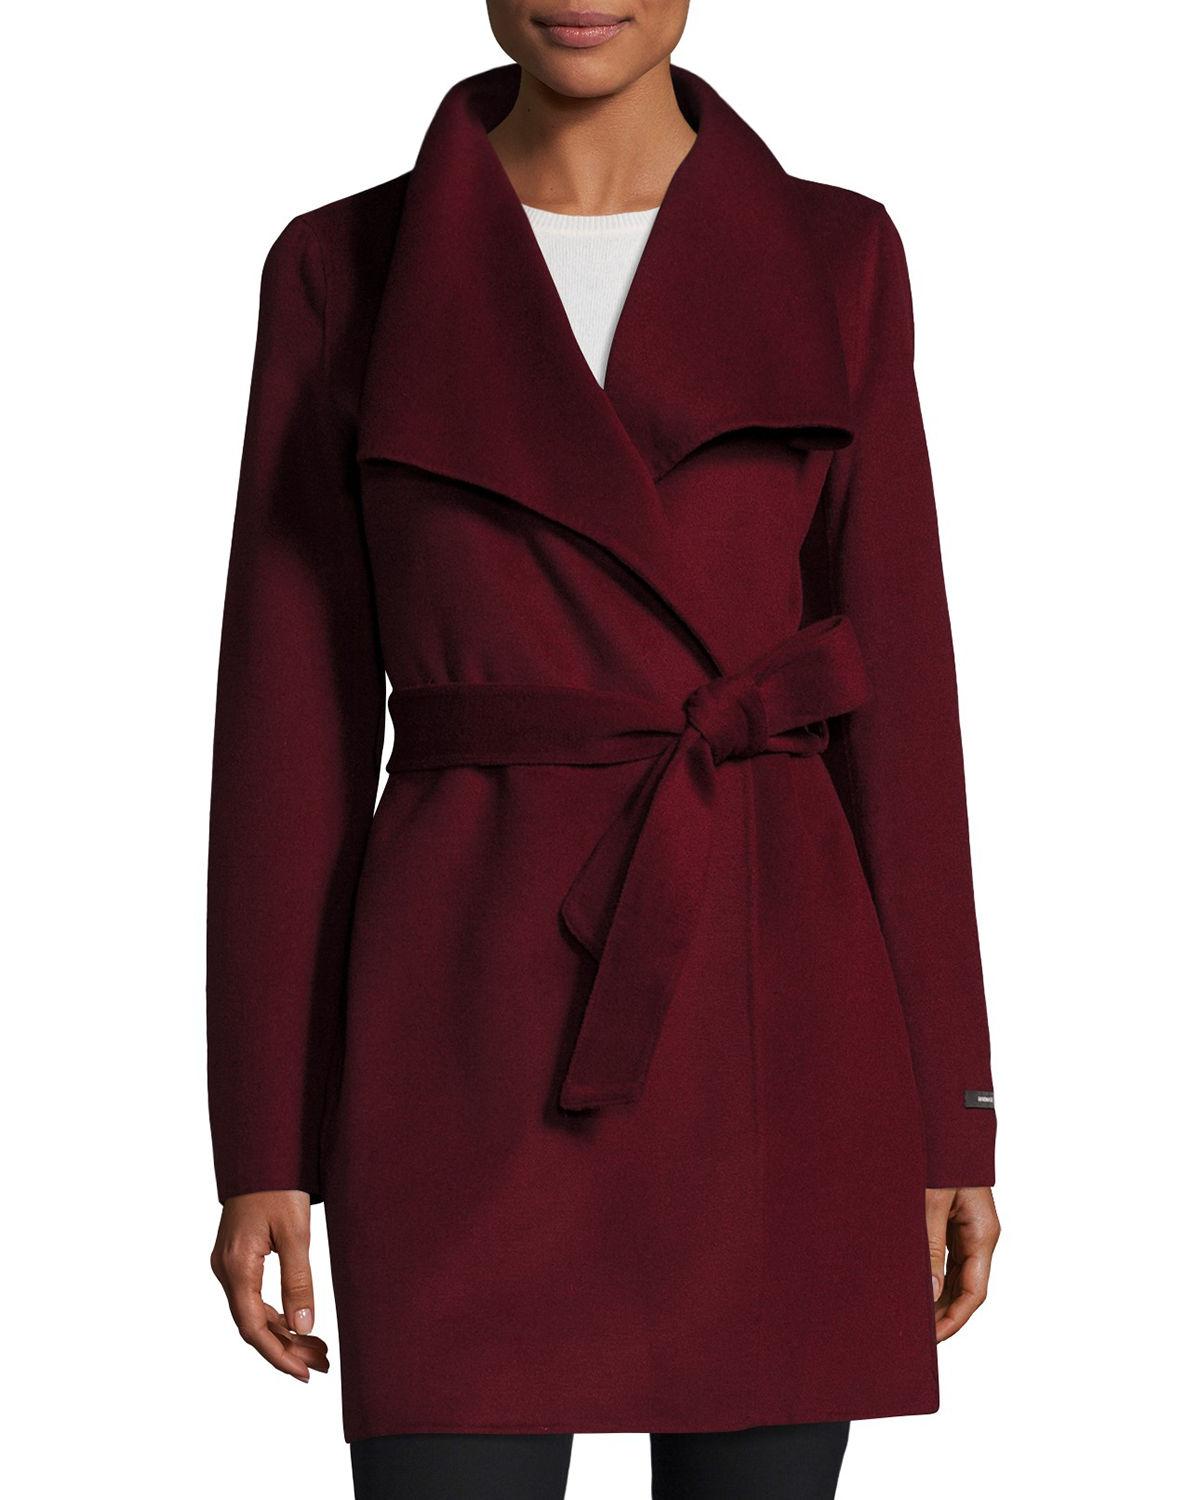 T Tahari Wool-blend Belted Wrap Coat in Burgundy (Brown) - Lyst